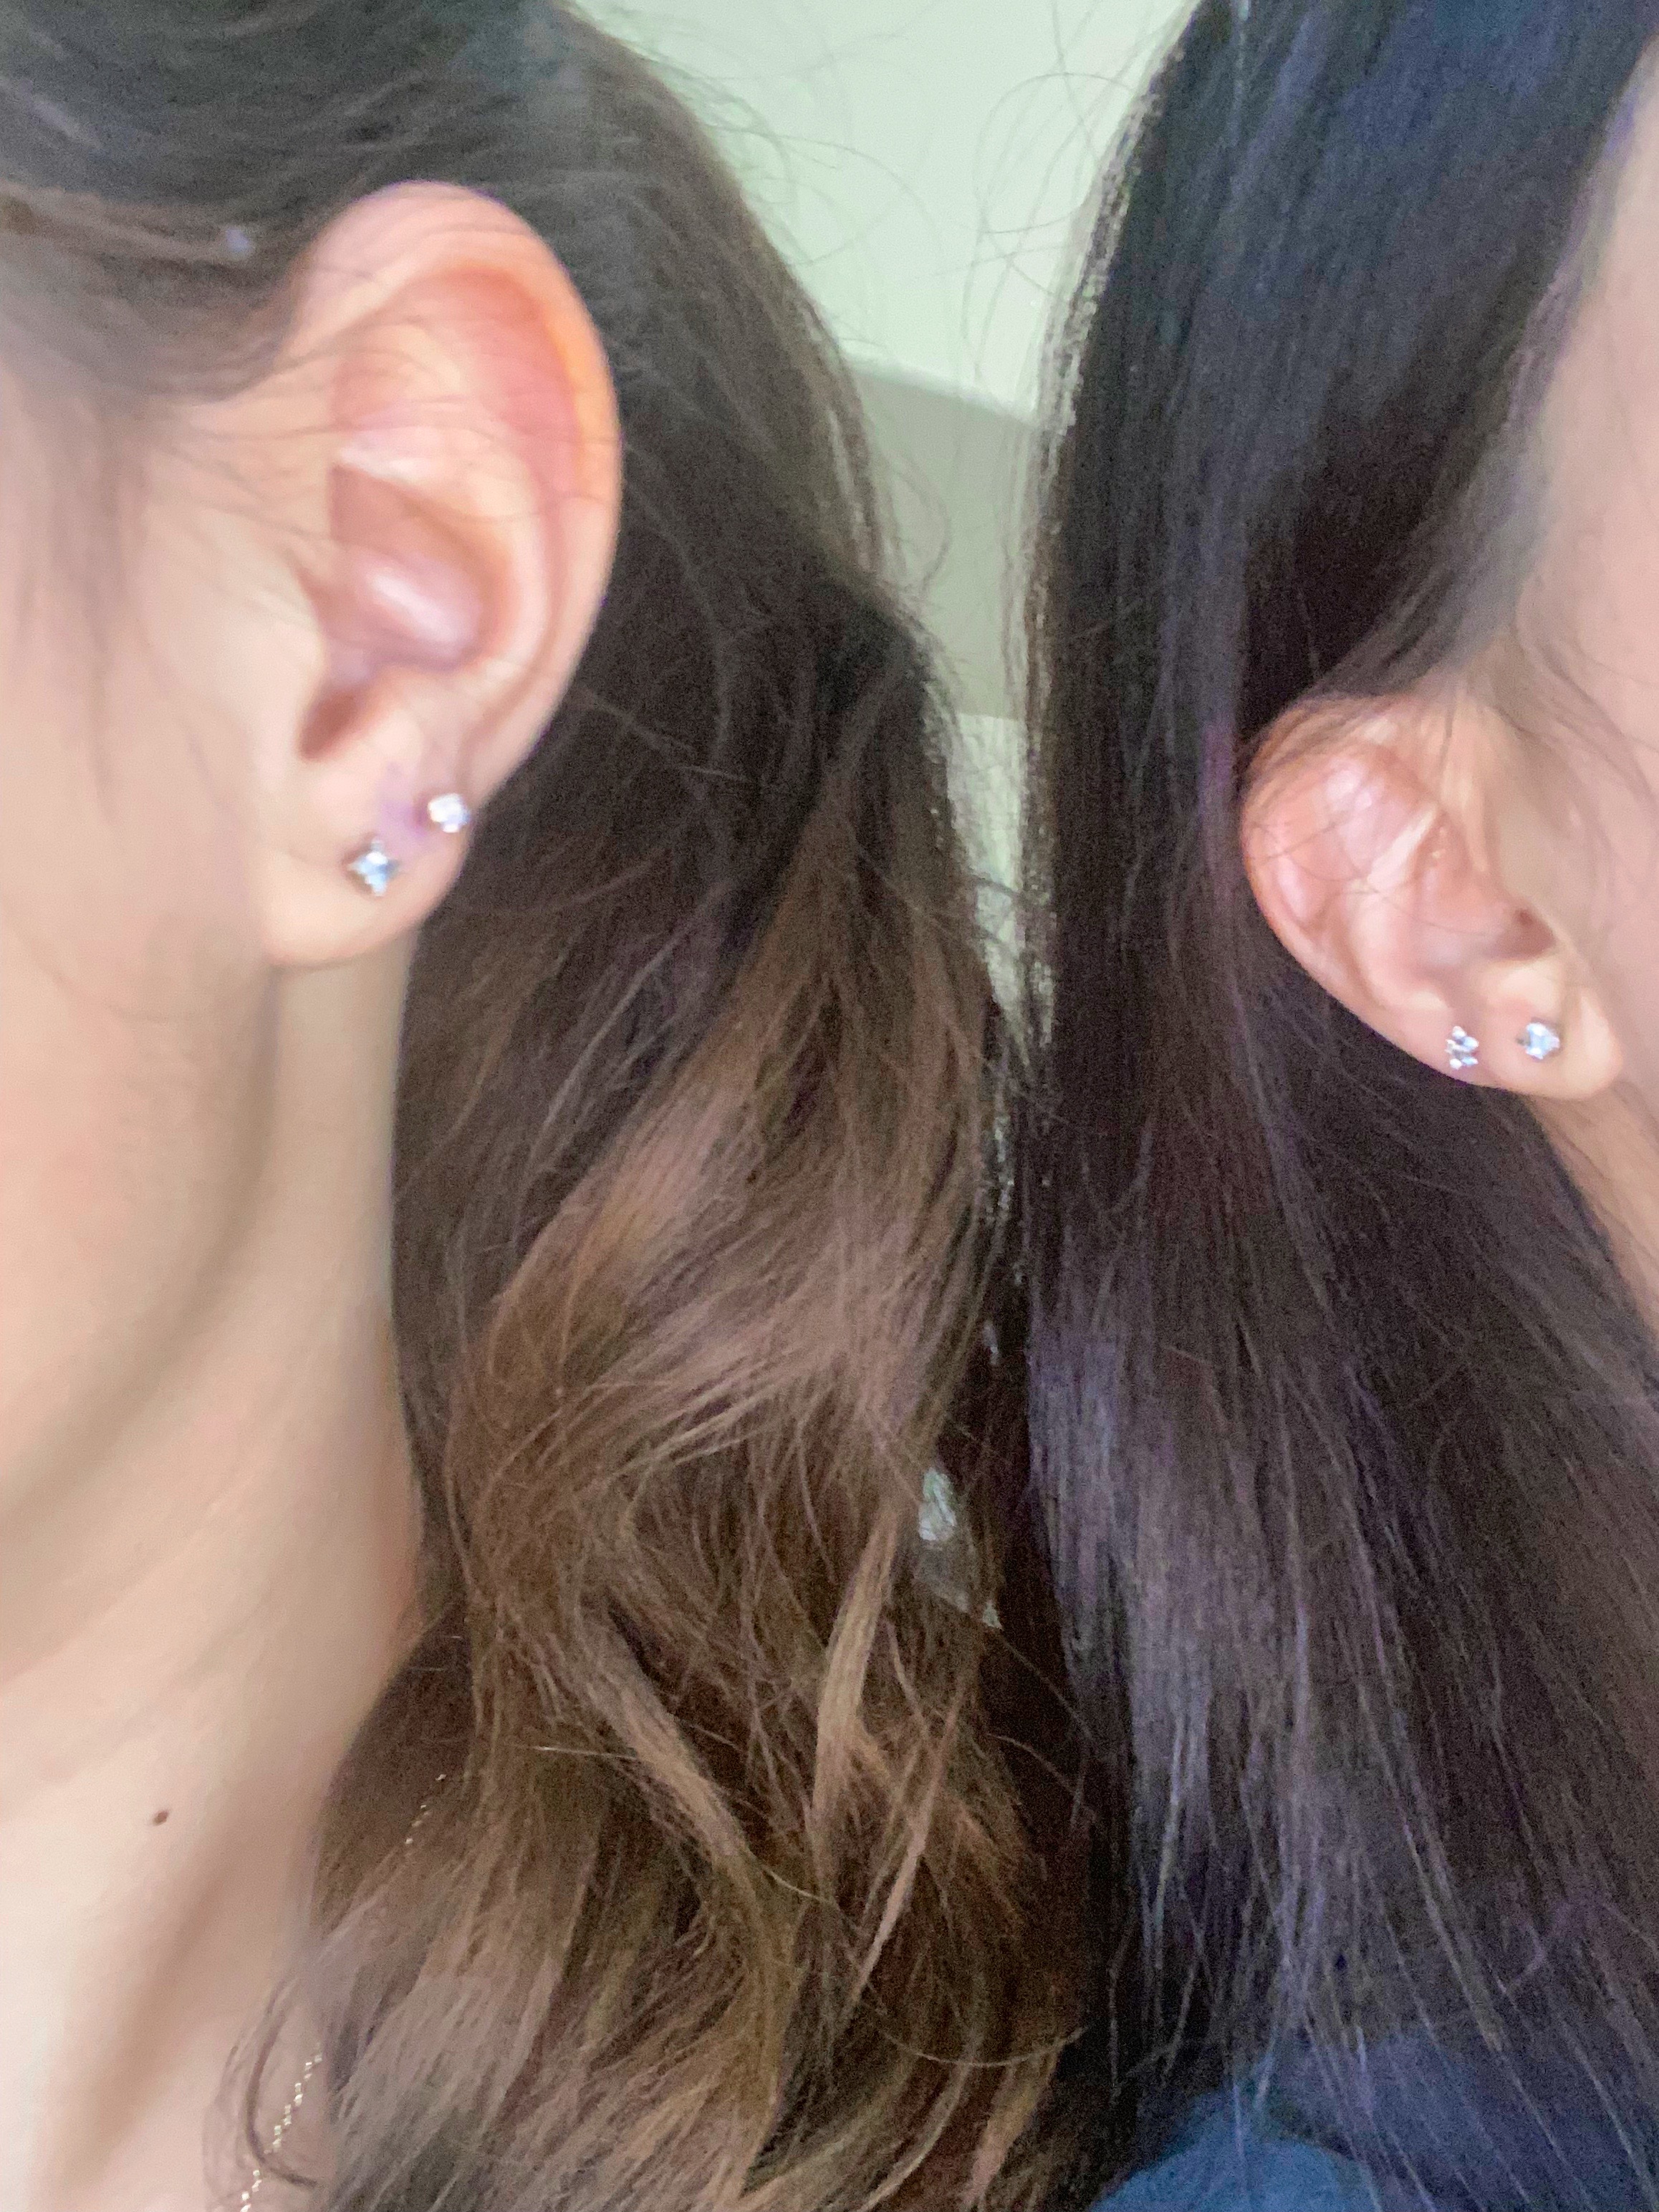 second ear piercings